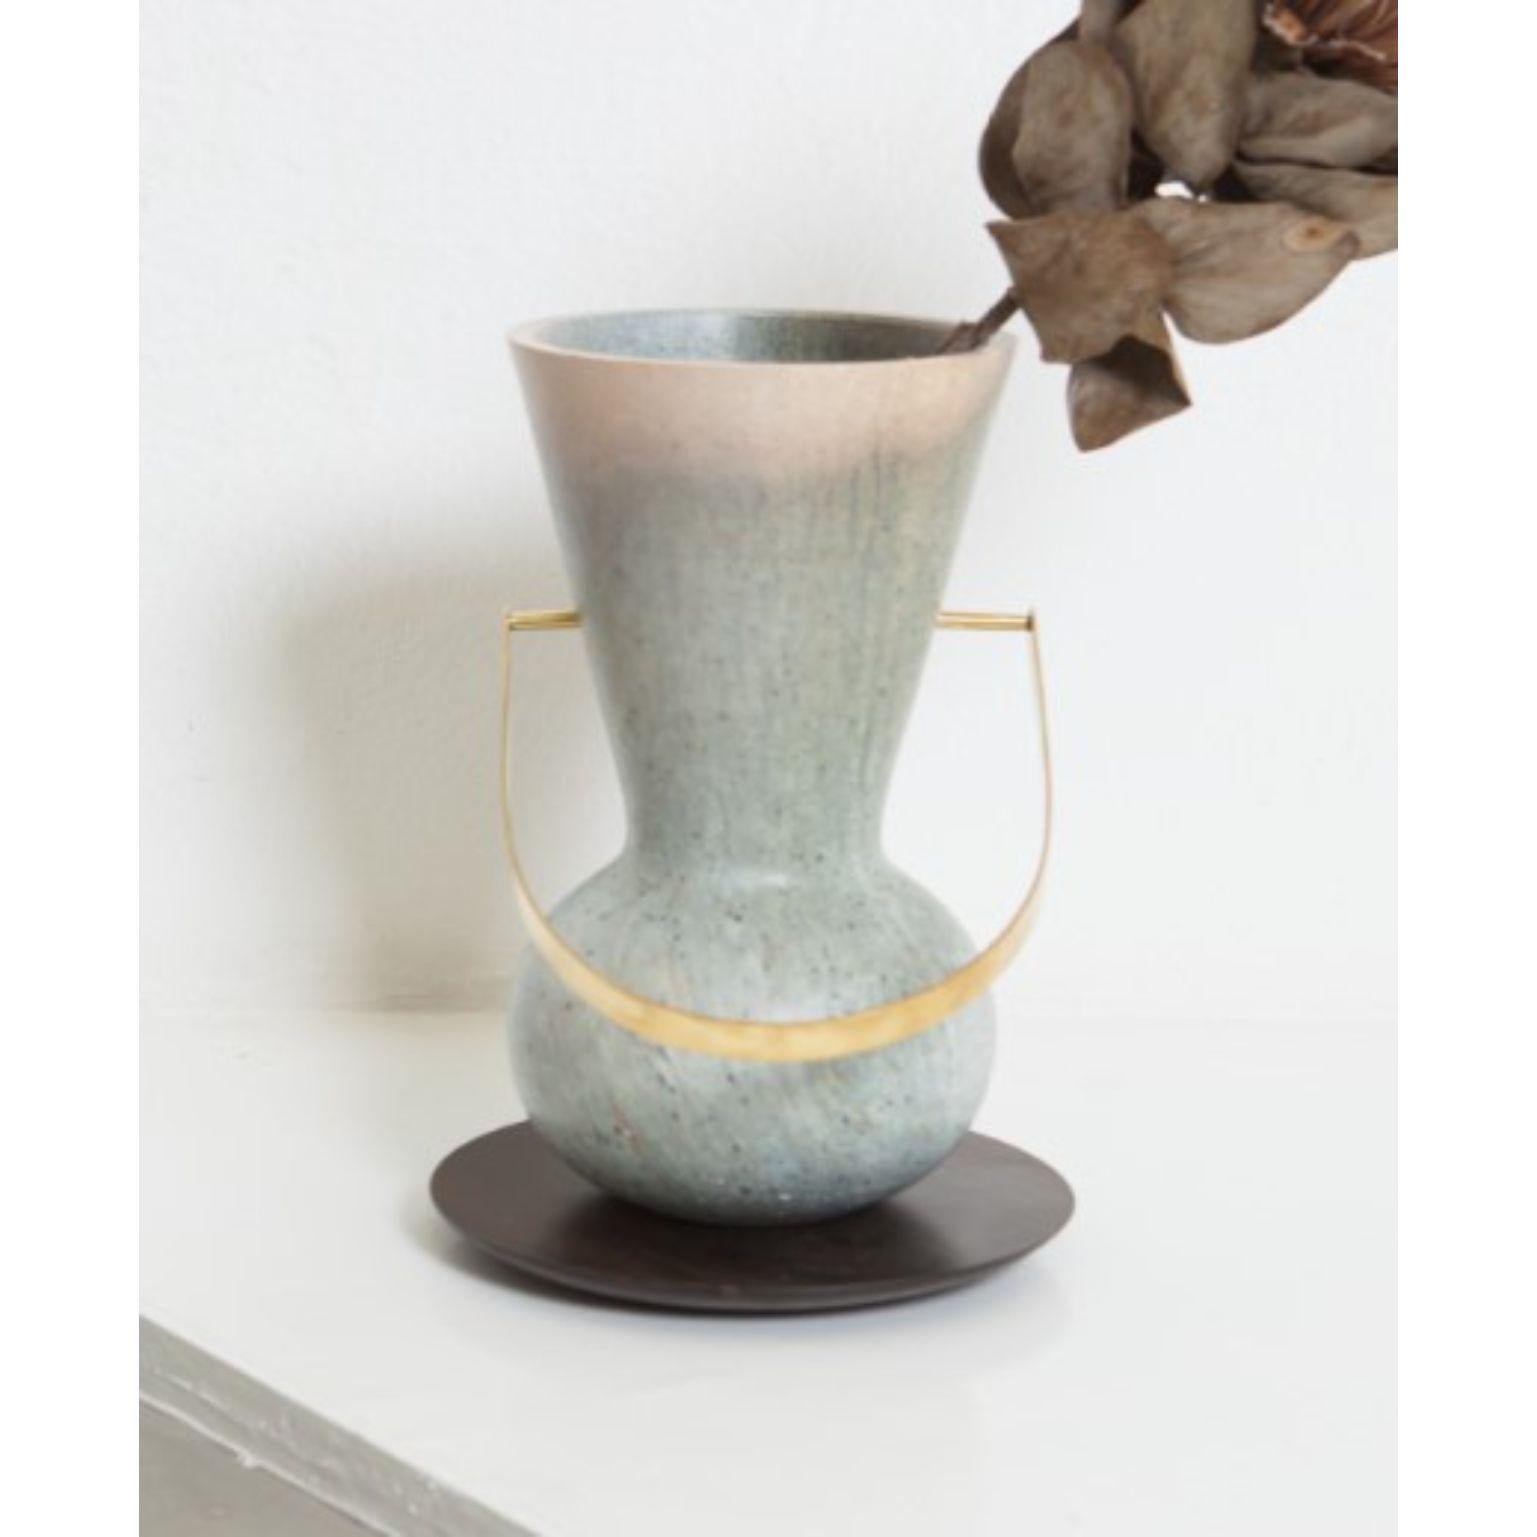 Ita 2, Soapstone Vase by Alva Design 1